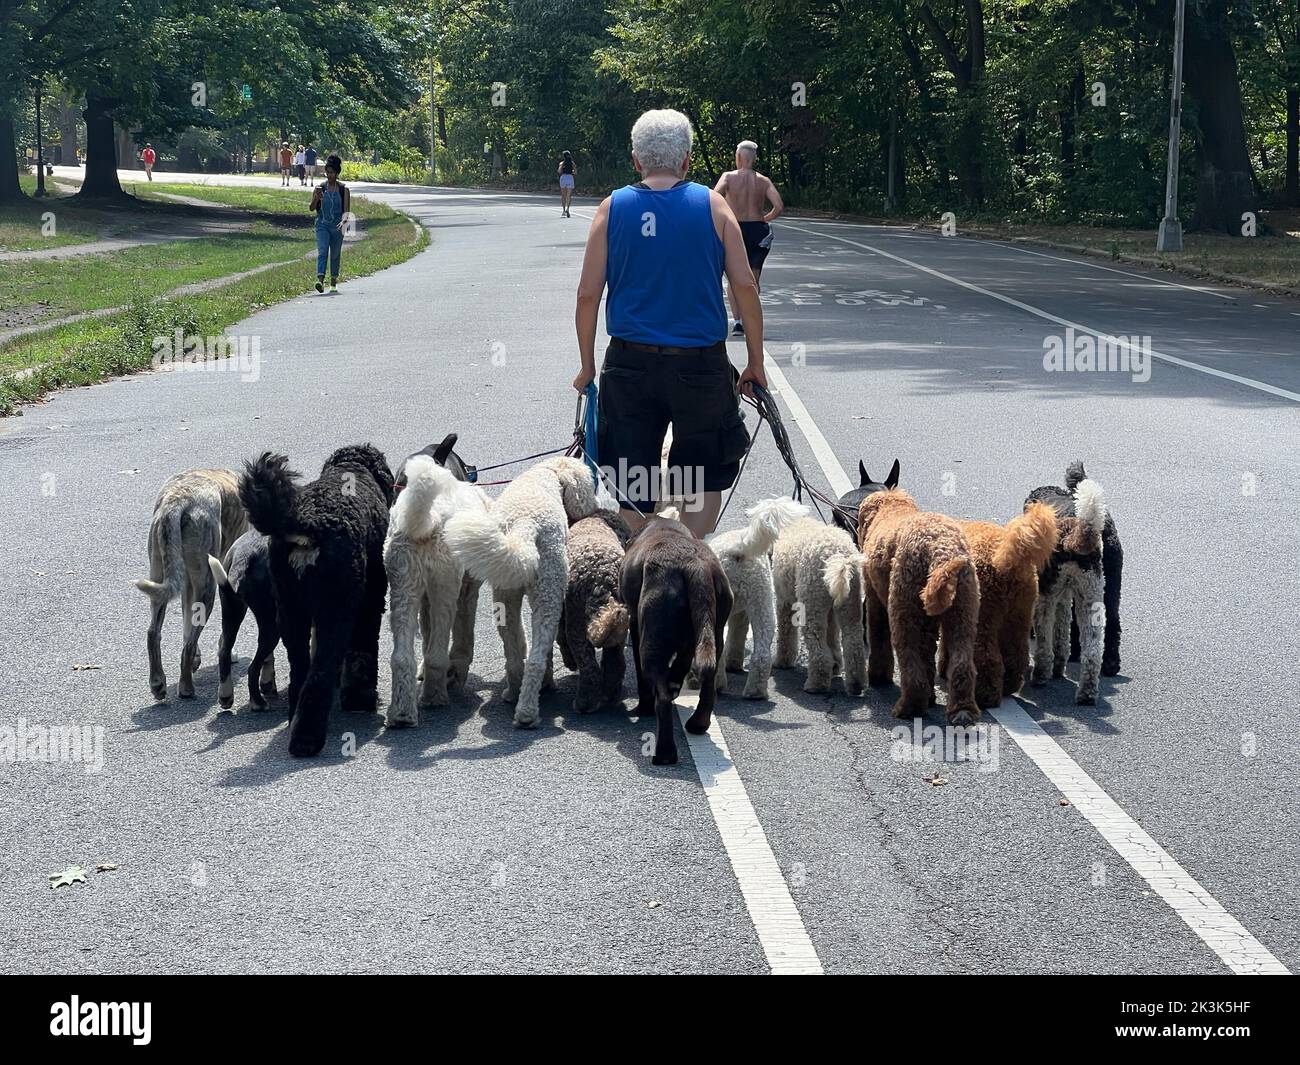 Vétéran professionnel chien marcheur avec 13 chiens marchent en harmonie sur la route à Prospect Park, Brooklyn, New York. Banque D'Images